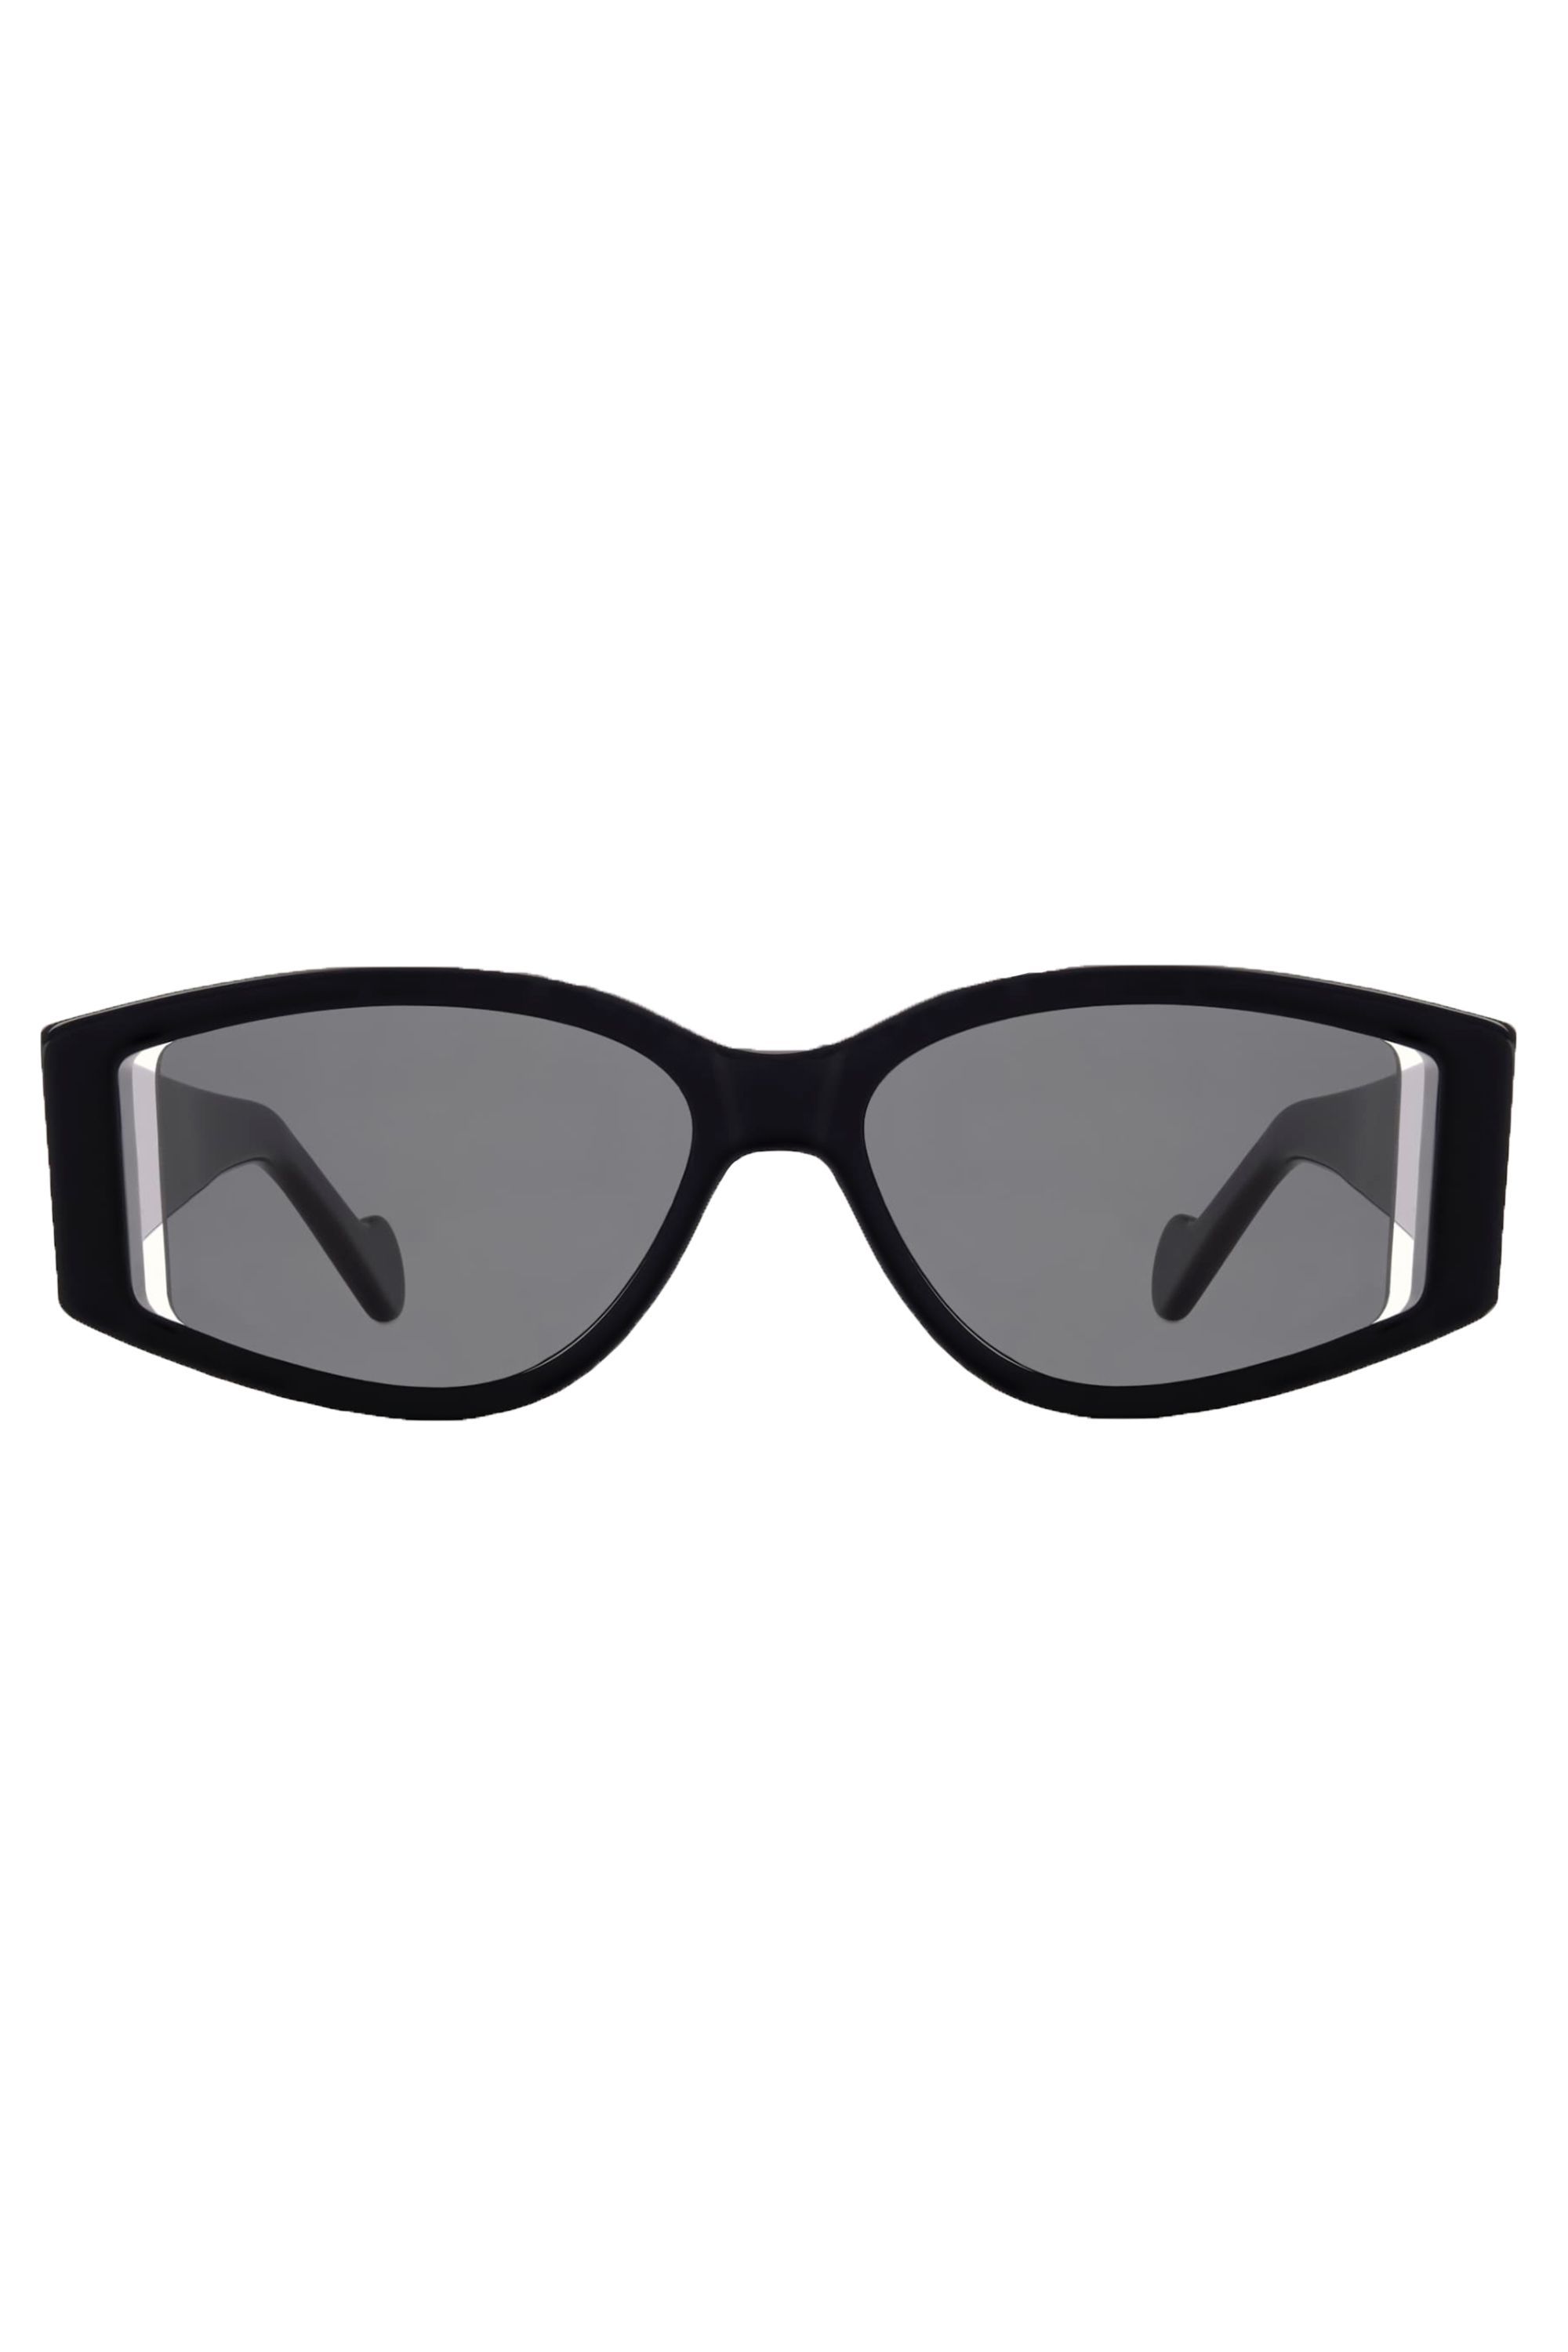 chanel flat top sunglasses